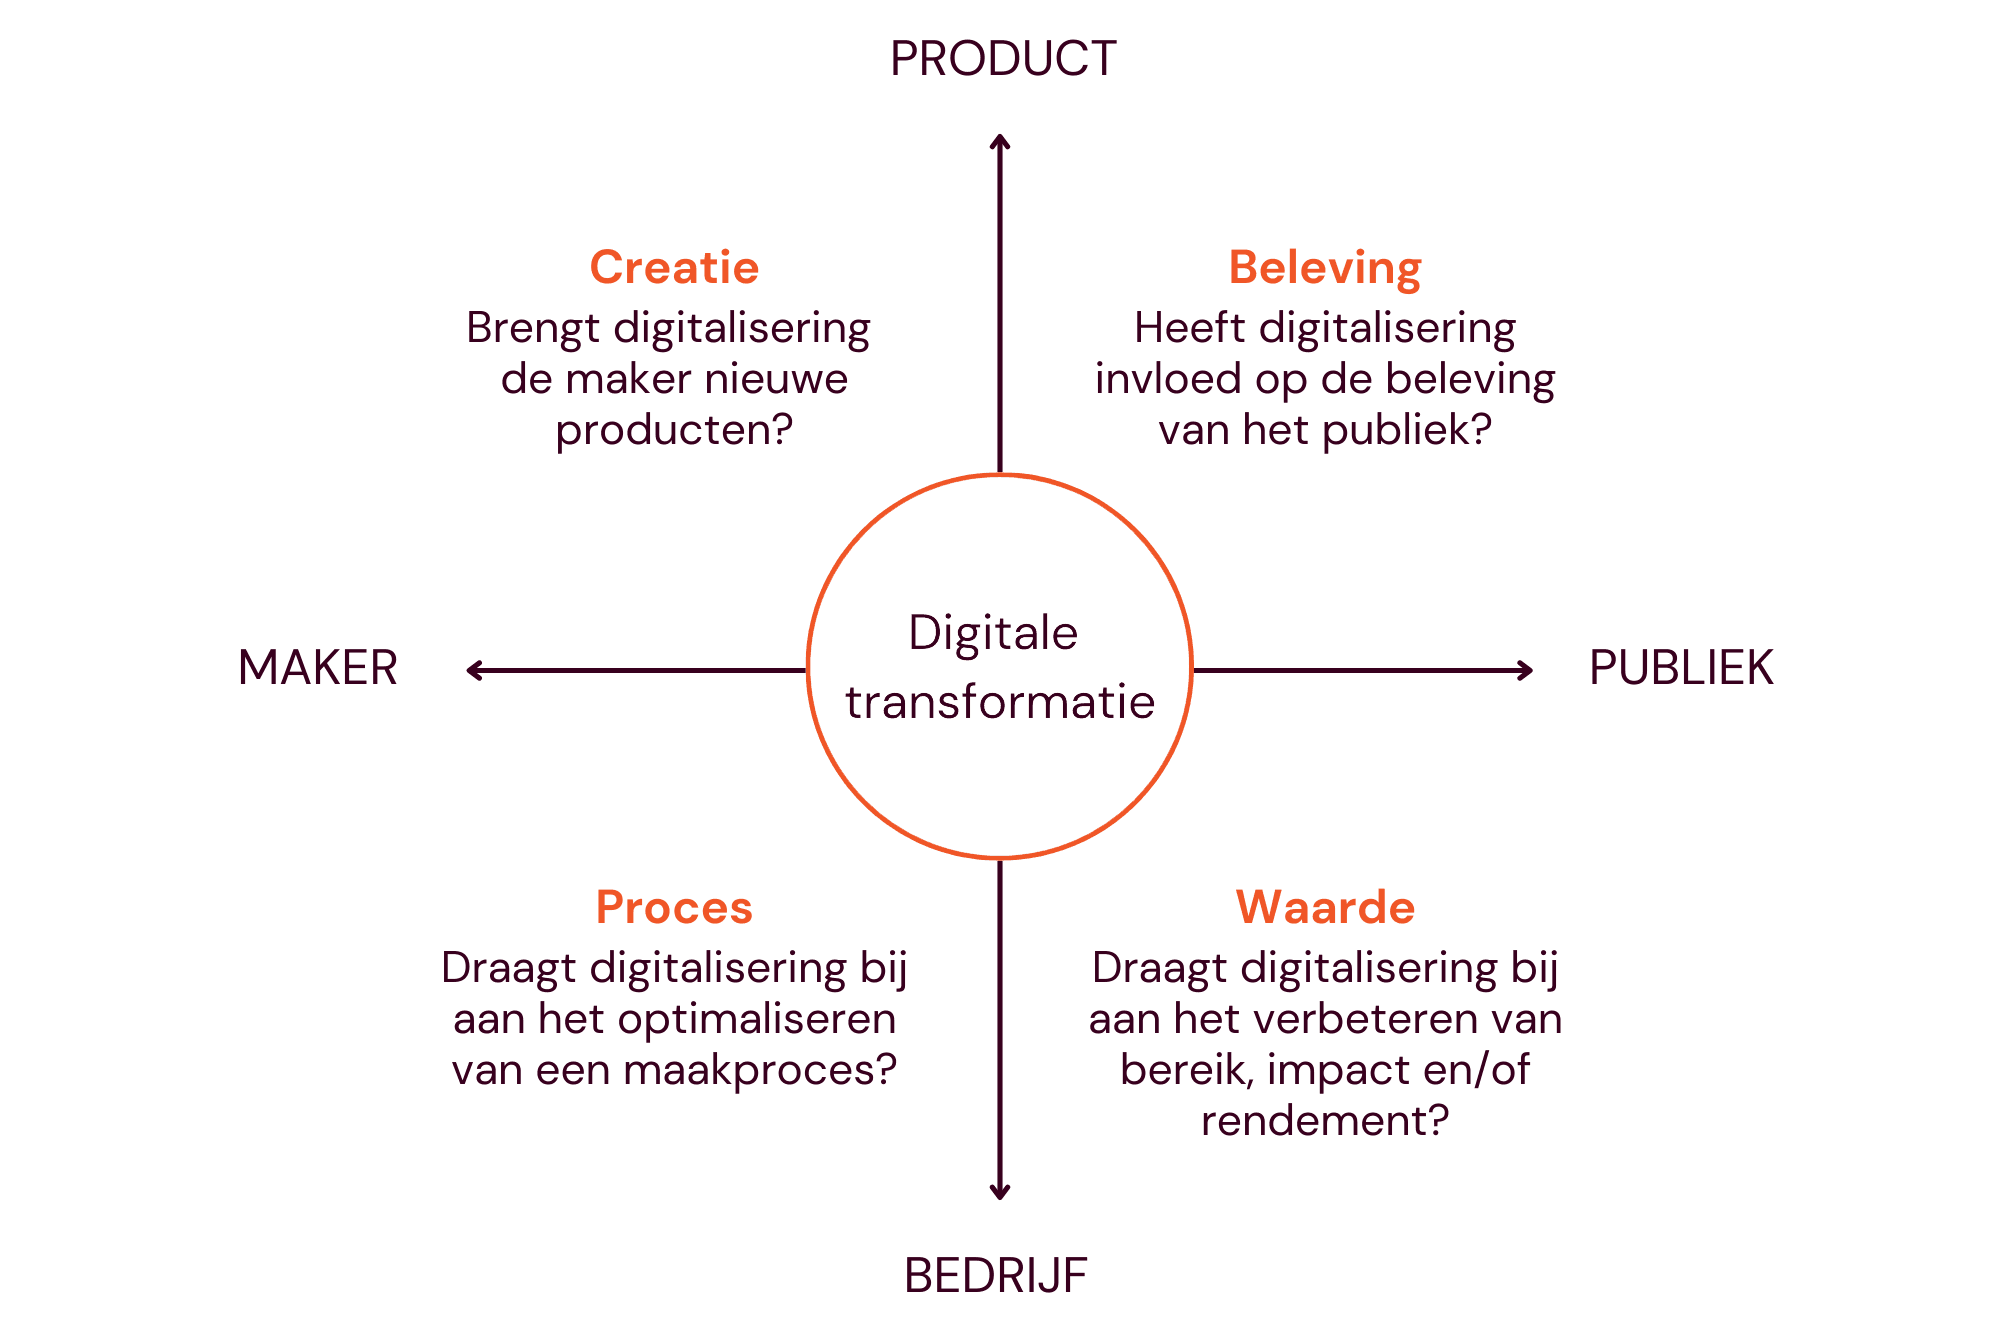 Kwadrant met de vier assen van het DEN Focusmodel. Het focusmodel is een hulpmiddel voor het ontwikkelen van een strategie voor digitale transformatie in culturele organisaties. Er zijn vier assen, met in het midden ‘Digitale transformatie’. Op het einde van de as links van het midden staat ‘Maker’. Op het einde van de as rechts van het midden staat ‘Publiek’.  Op het einde van de as boven het midden staat ‘Product’. Op het einde van de as onder het midden staat ‘Bedrijf’.
Linksboven staat tussen ‘Maker’ en ‘Product’ het kwadrant ‘Creatie’ met de vraag ‘Brengt digitalisering de maker nieuwe producten?’
Rechtsboven staat tussen ‘Product’ en ‘Publiek’ het kwadrant ‘Beleving’ met de vraag ‘Heeft digitalisering invloed op de beleving van het publiek?’
Linksonder staat tussen ‘Maker’ en ‘Bedrijf’ het kwadrant ‘Proces’ met de vraag ‘Draagt digitalisering bij aan het optimaliseren van de ondersteunende processen van een maakproces?’
Rechtsonder staat tussen ‘Publiek’ en ‘Bedrijf’ het kwadrant ‘Waarde’ met de vraag ‘Draagt digitalisering bij aan het verbeteren van bereik, impact en/of rendement?’